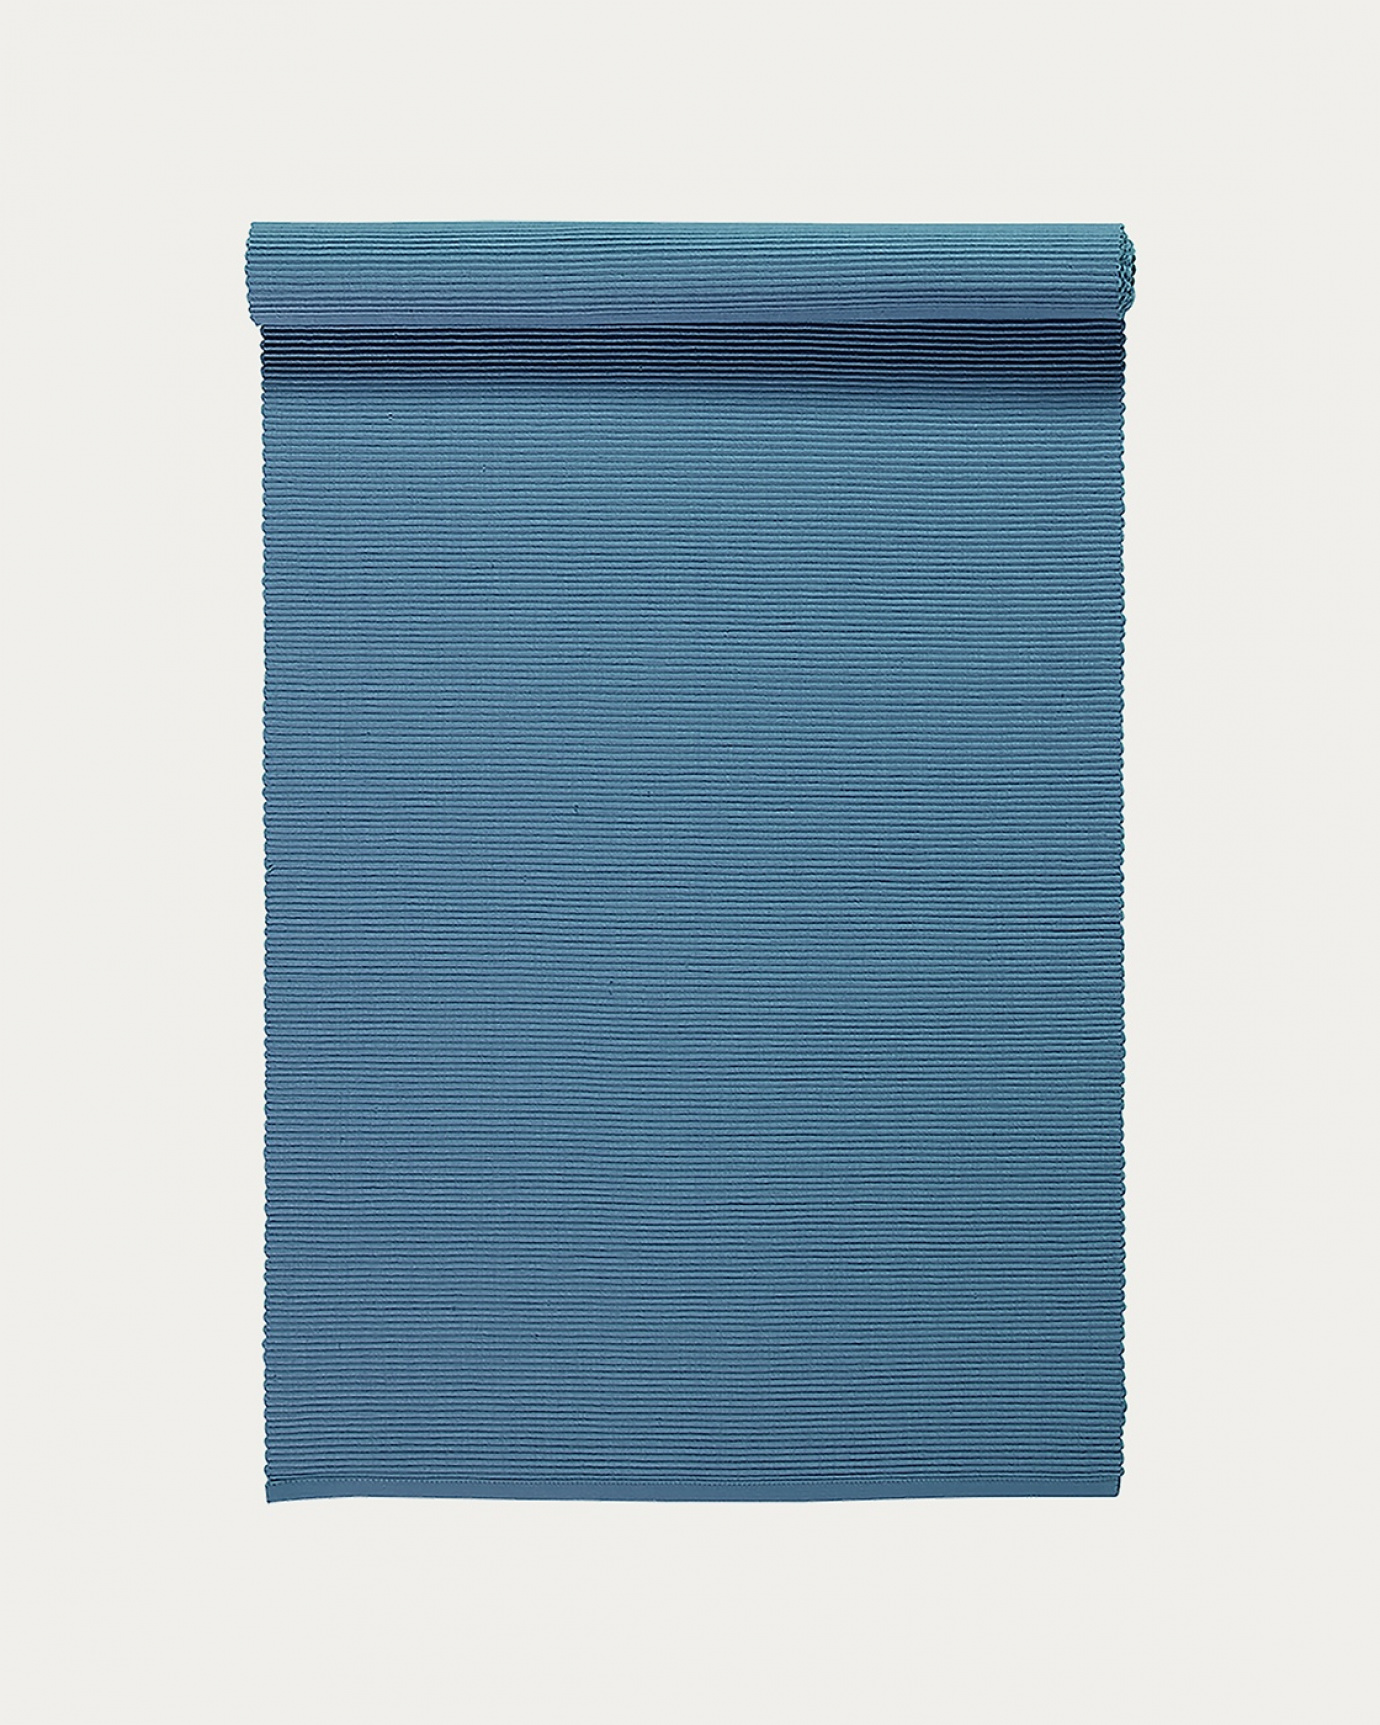 Image du produit chemin de table UNI bleu ocean en coton doux de qualité côtelée de LINUM DESIGN. Taille 45 x 150 cm.